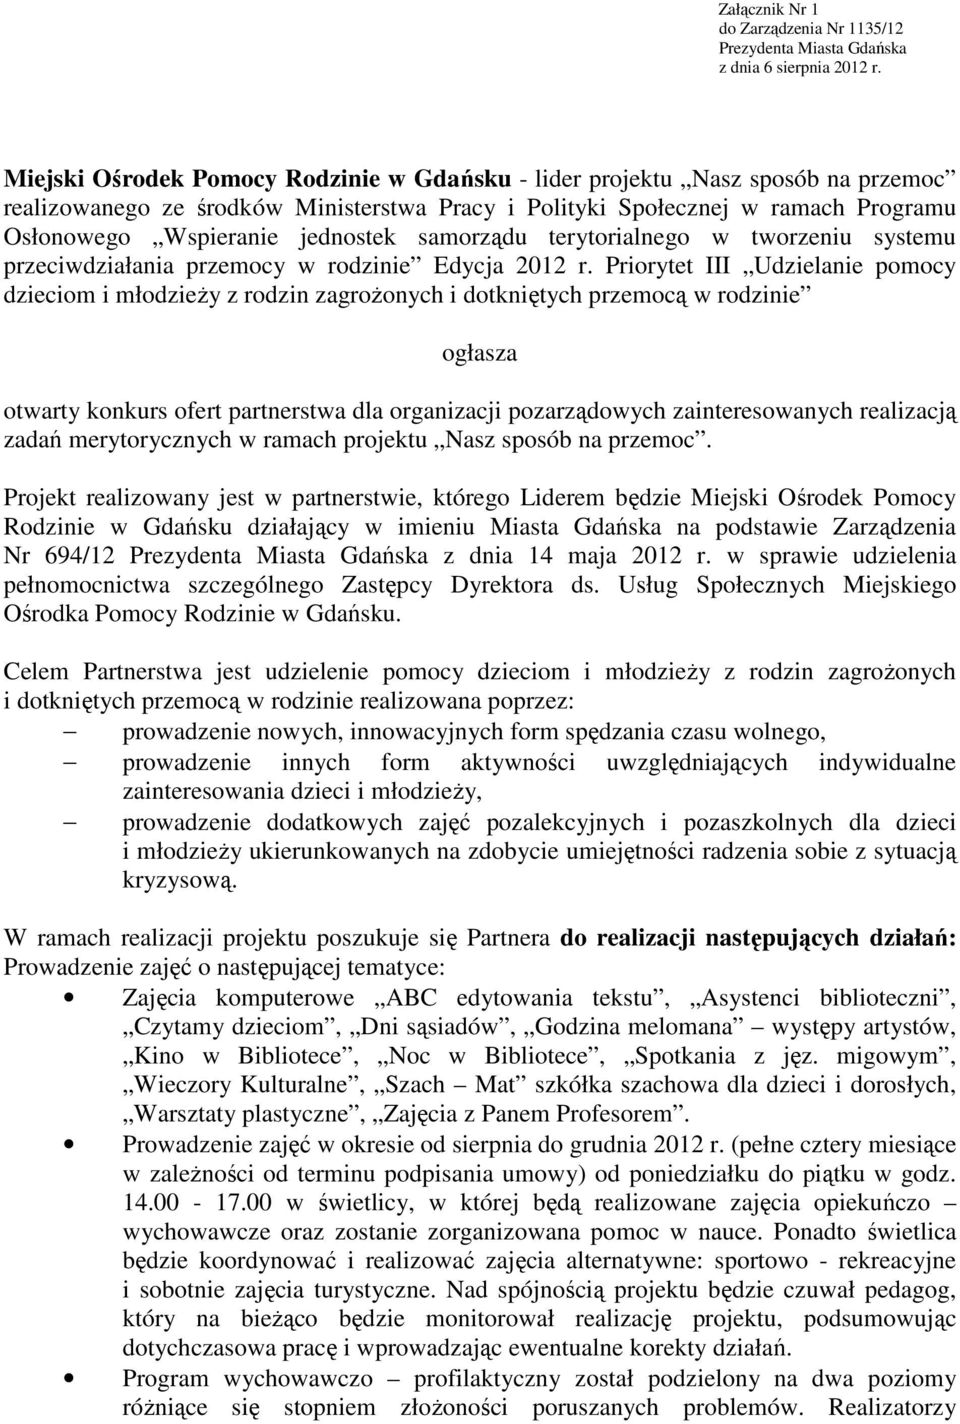 samorządu terytorialnego w tworzeniu systemu przeciwdziałania przemocy w rodzinie Edycja 2012 r.